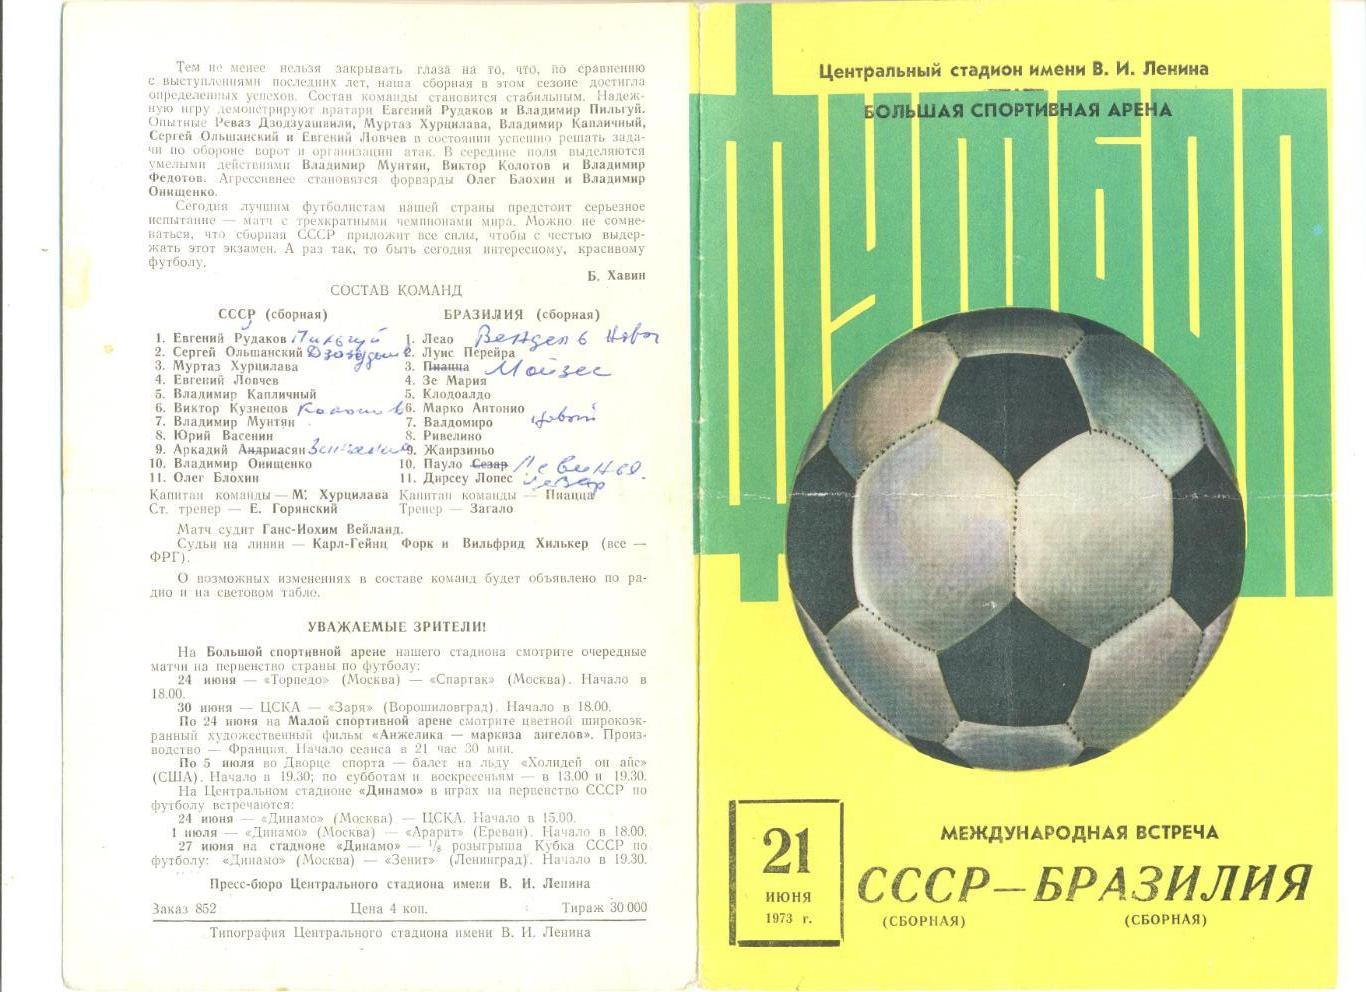 СССР - Бразилия 21.06.1973 г. Товарищеский матч.